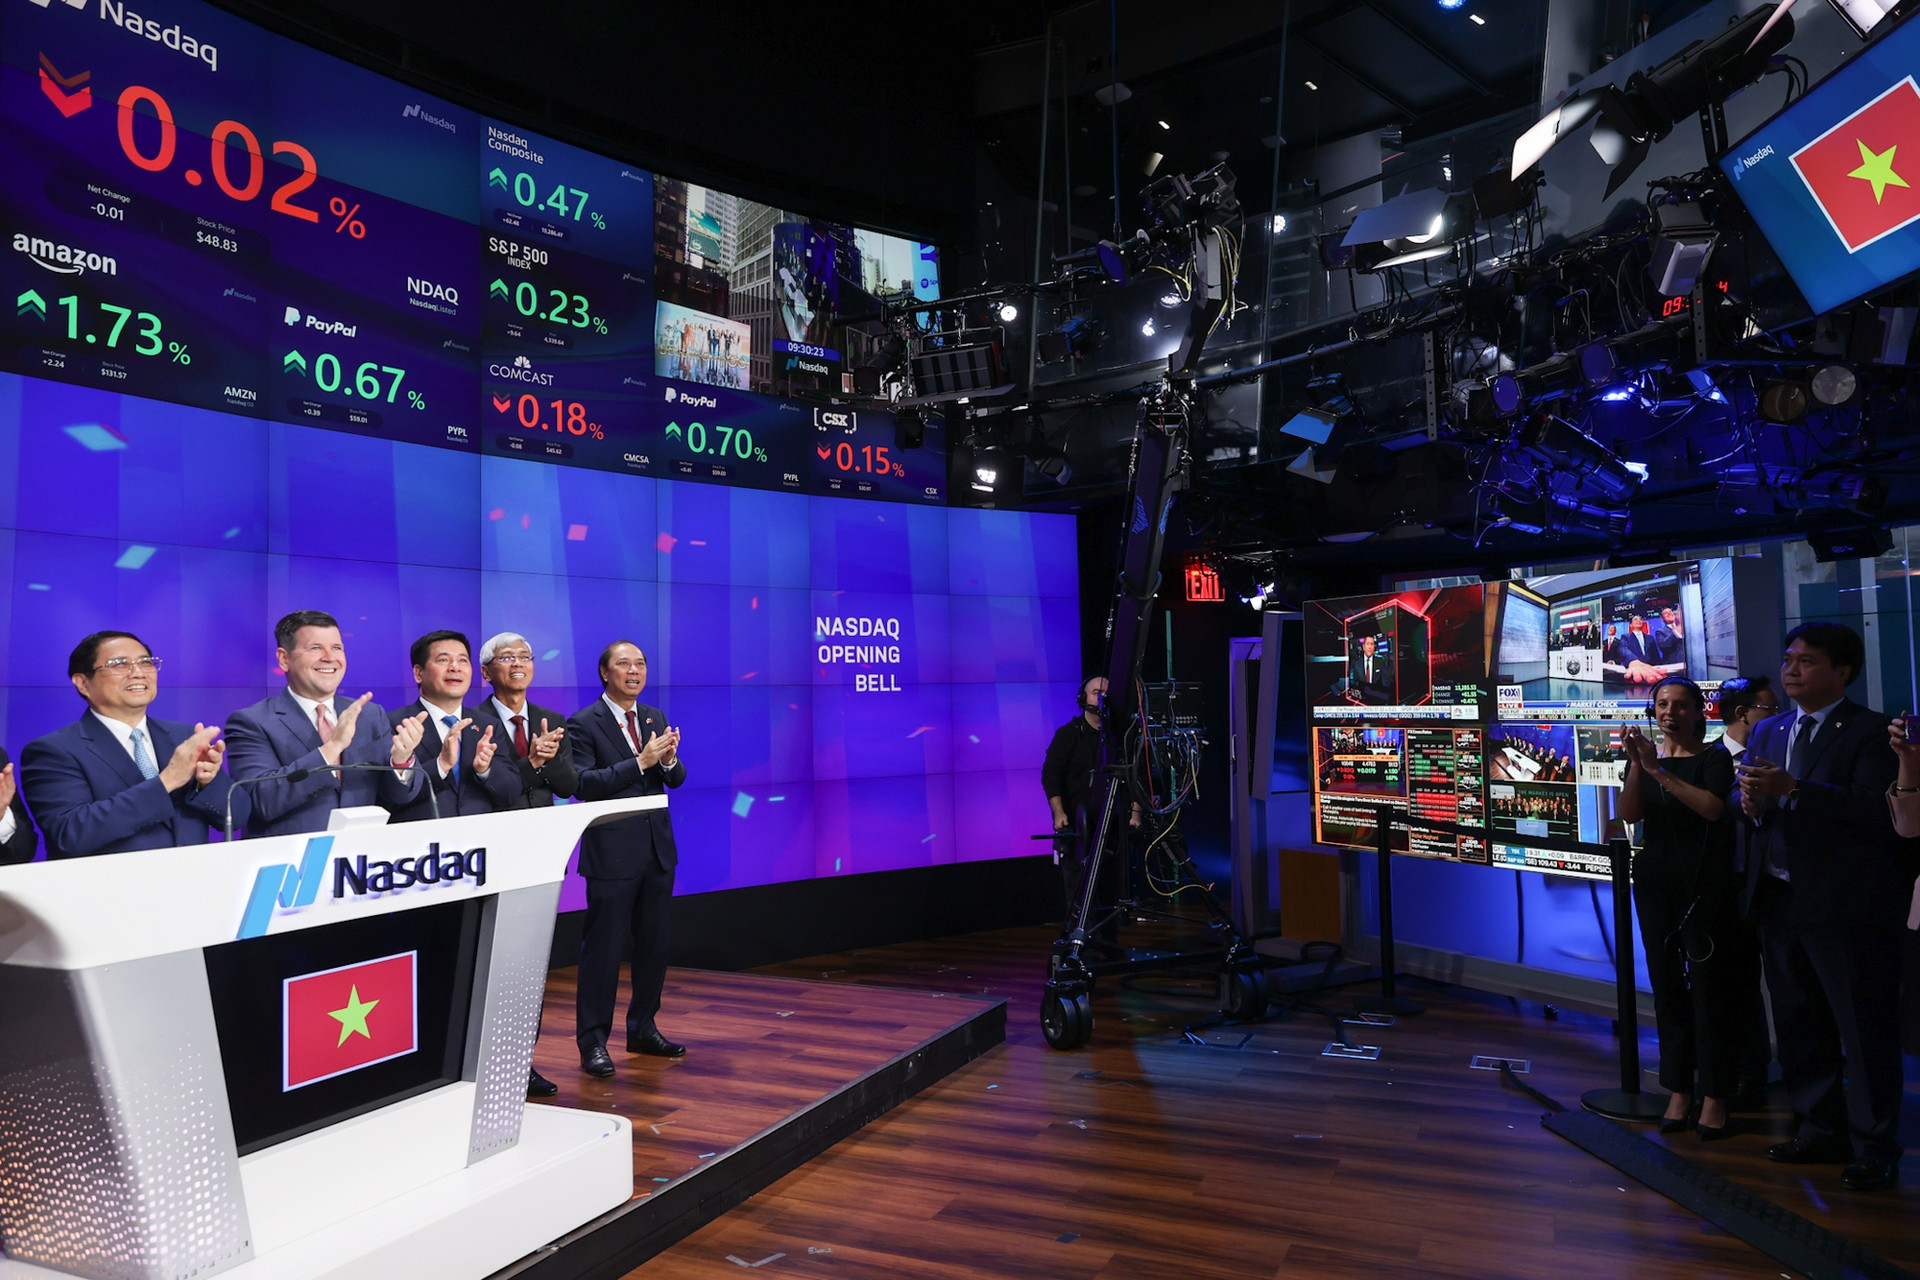 Thủ tướng rung chuông tại Sàn chứng khoán NASDAQ, kêu gọi các nhà đầu tư Hoa Kỳ - Ảnh 9.